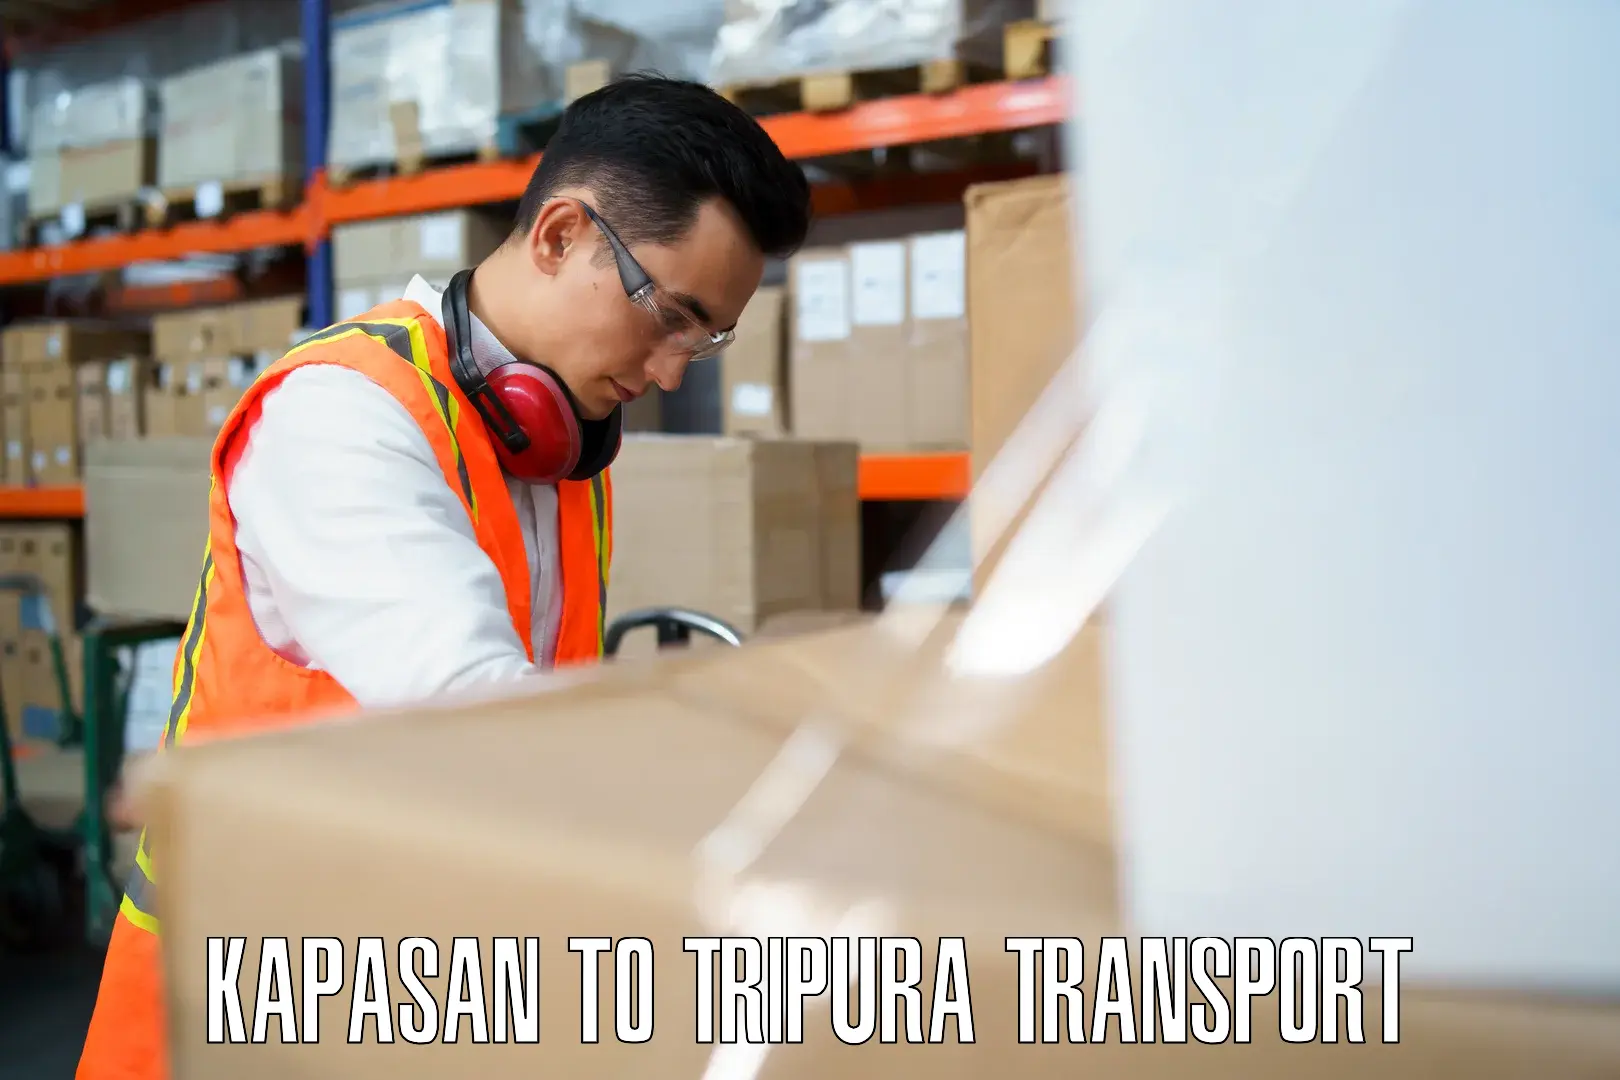 Shipping partner Kapasan to West Tripura